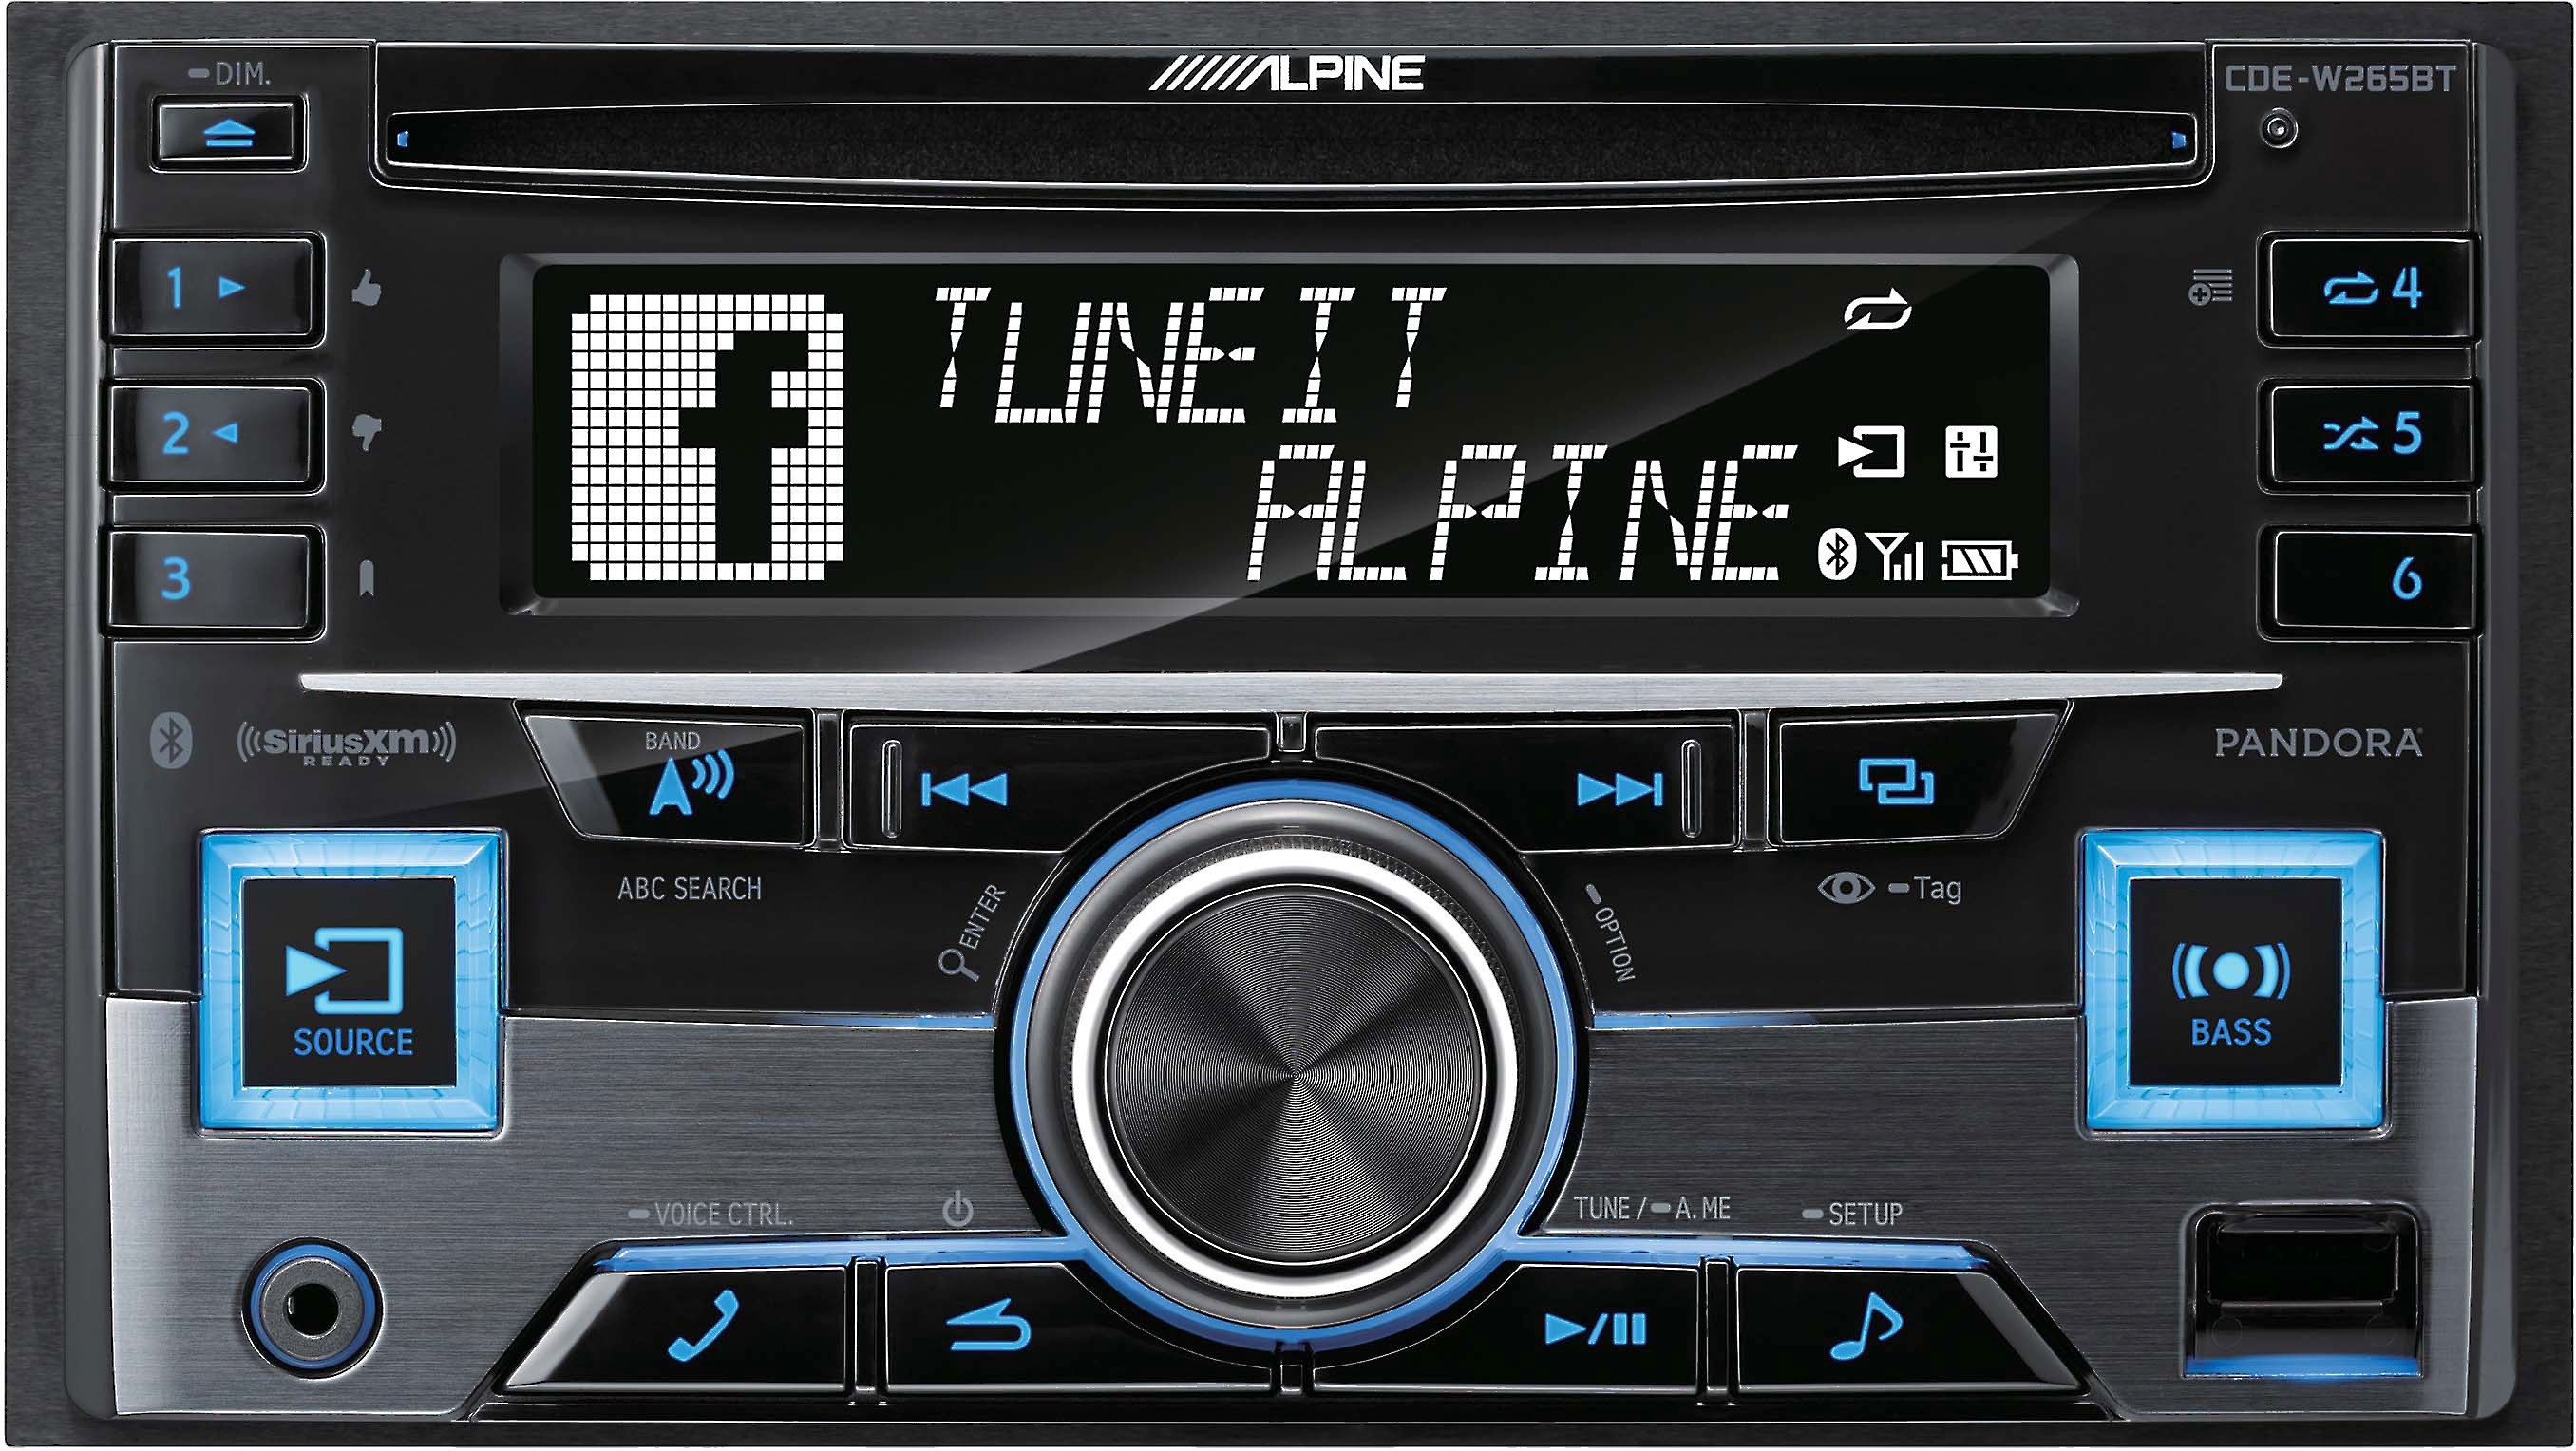 Alpine CDEW265BT CD receiver at Crutchfield